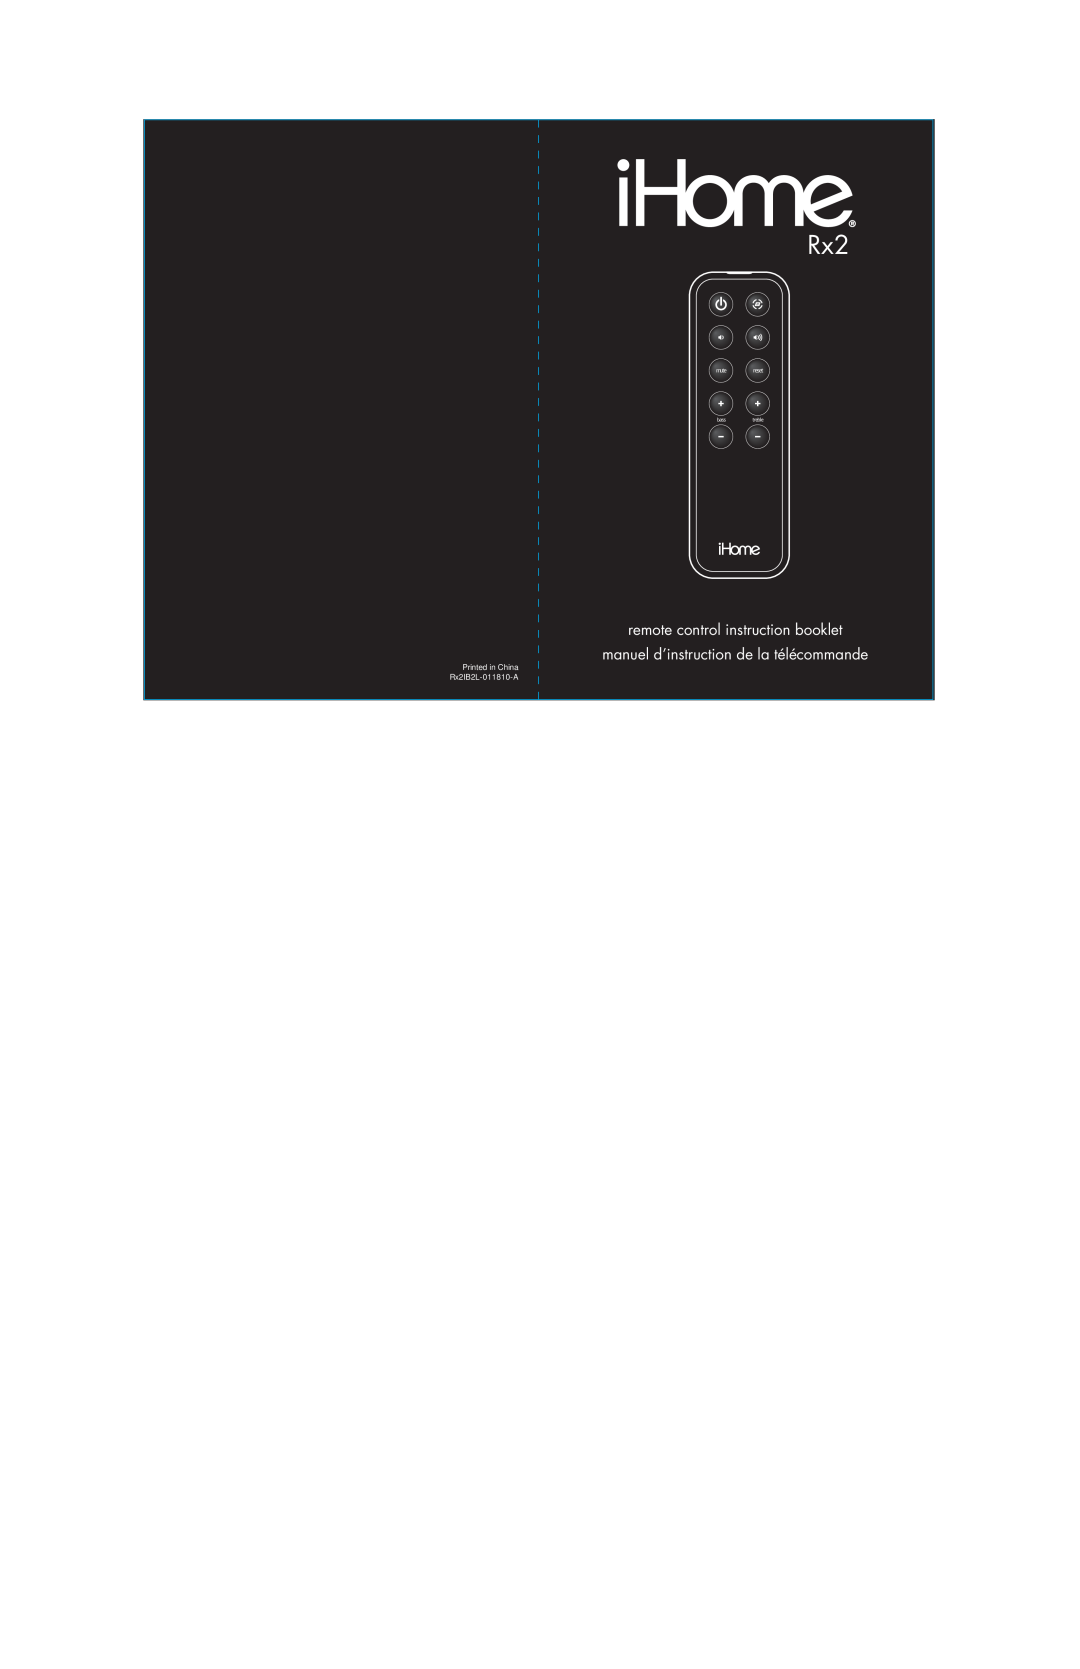 iHome Rx2 manual remote control instruction booklet, manuel d’instruction de la télécommande, mutereset, basstreble 